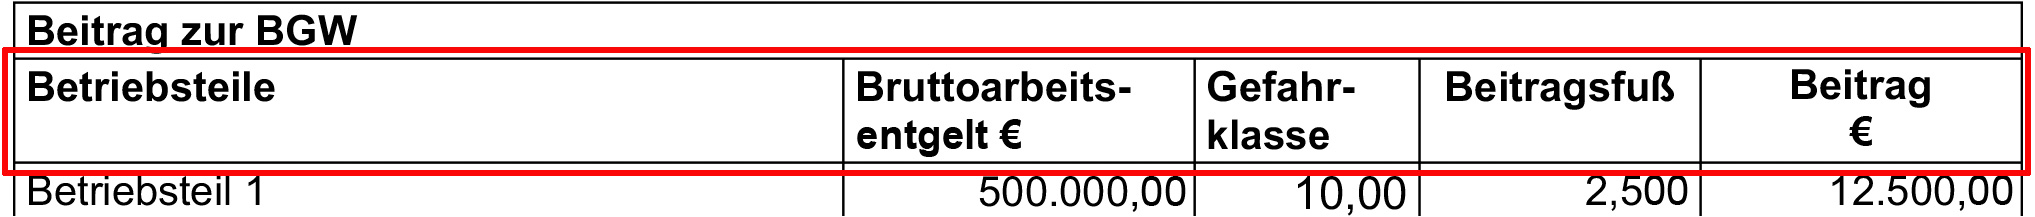 Ausschnitt eines BGW-Beitragsbescheids: Eine Tabellenzeile ist rot umrandet, in den Spalten stehen jeweils die Begriffe "Betriebsteile", "Bruttoarbeitsentgelt €", "Gefahrklasse", "Beitragsfuß" und "Beitrag €"